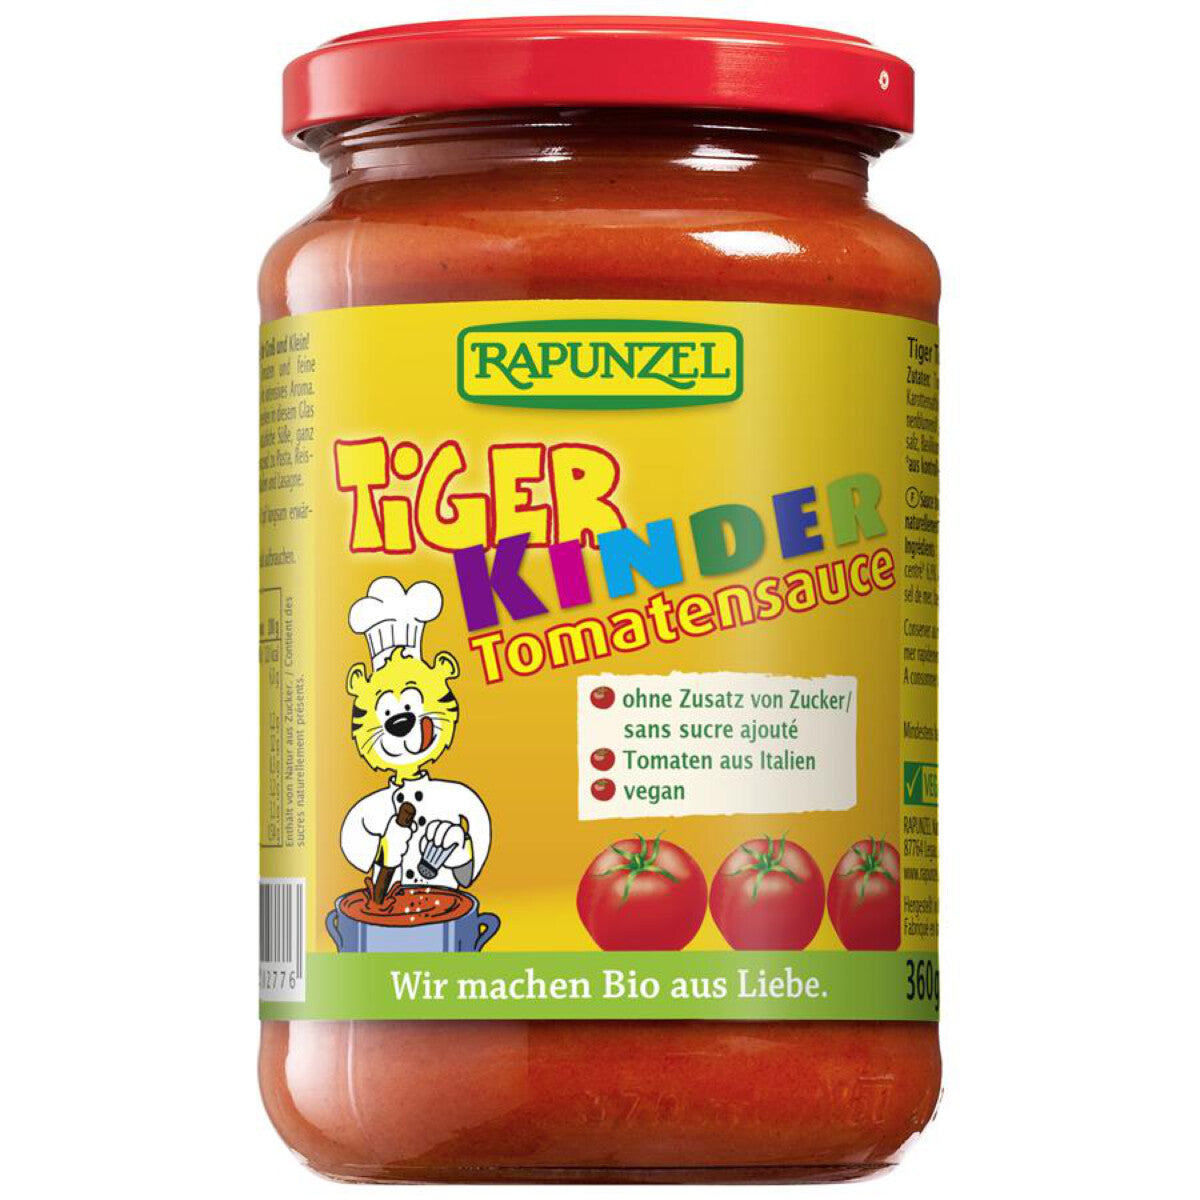 RAPUNZEL Tiger Kinder Tomatensauce - 360 g